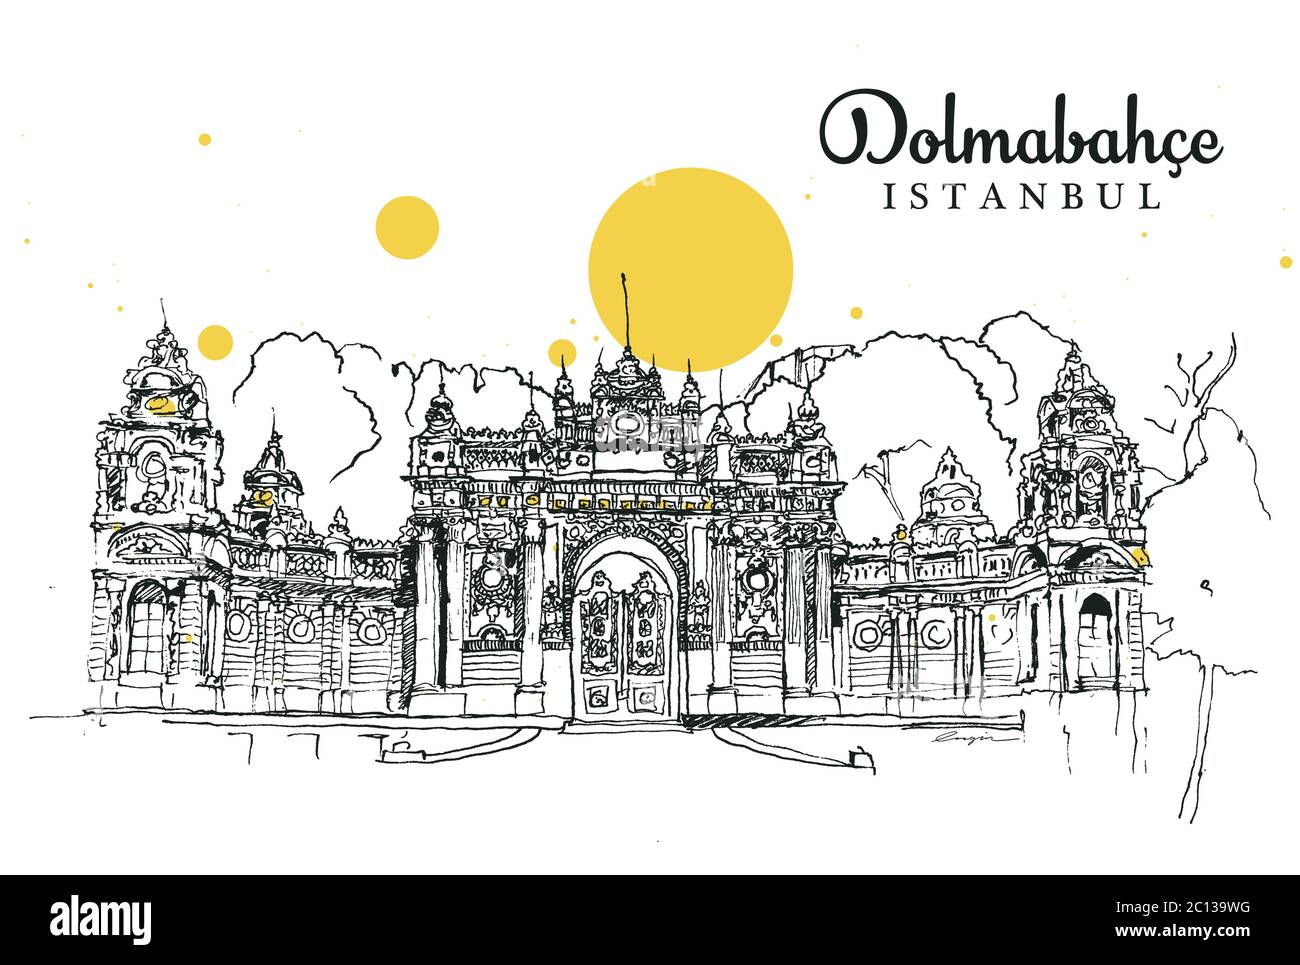 Zeichnung Skizzendarstellung des großen Tores des Dolmabahce Palastes in Besiktas, Istanbul. Dolmabahce ist ein alter osmanischer Königspalast. Stock Vektor